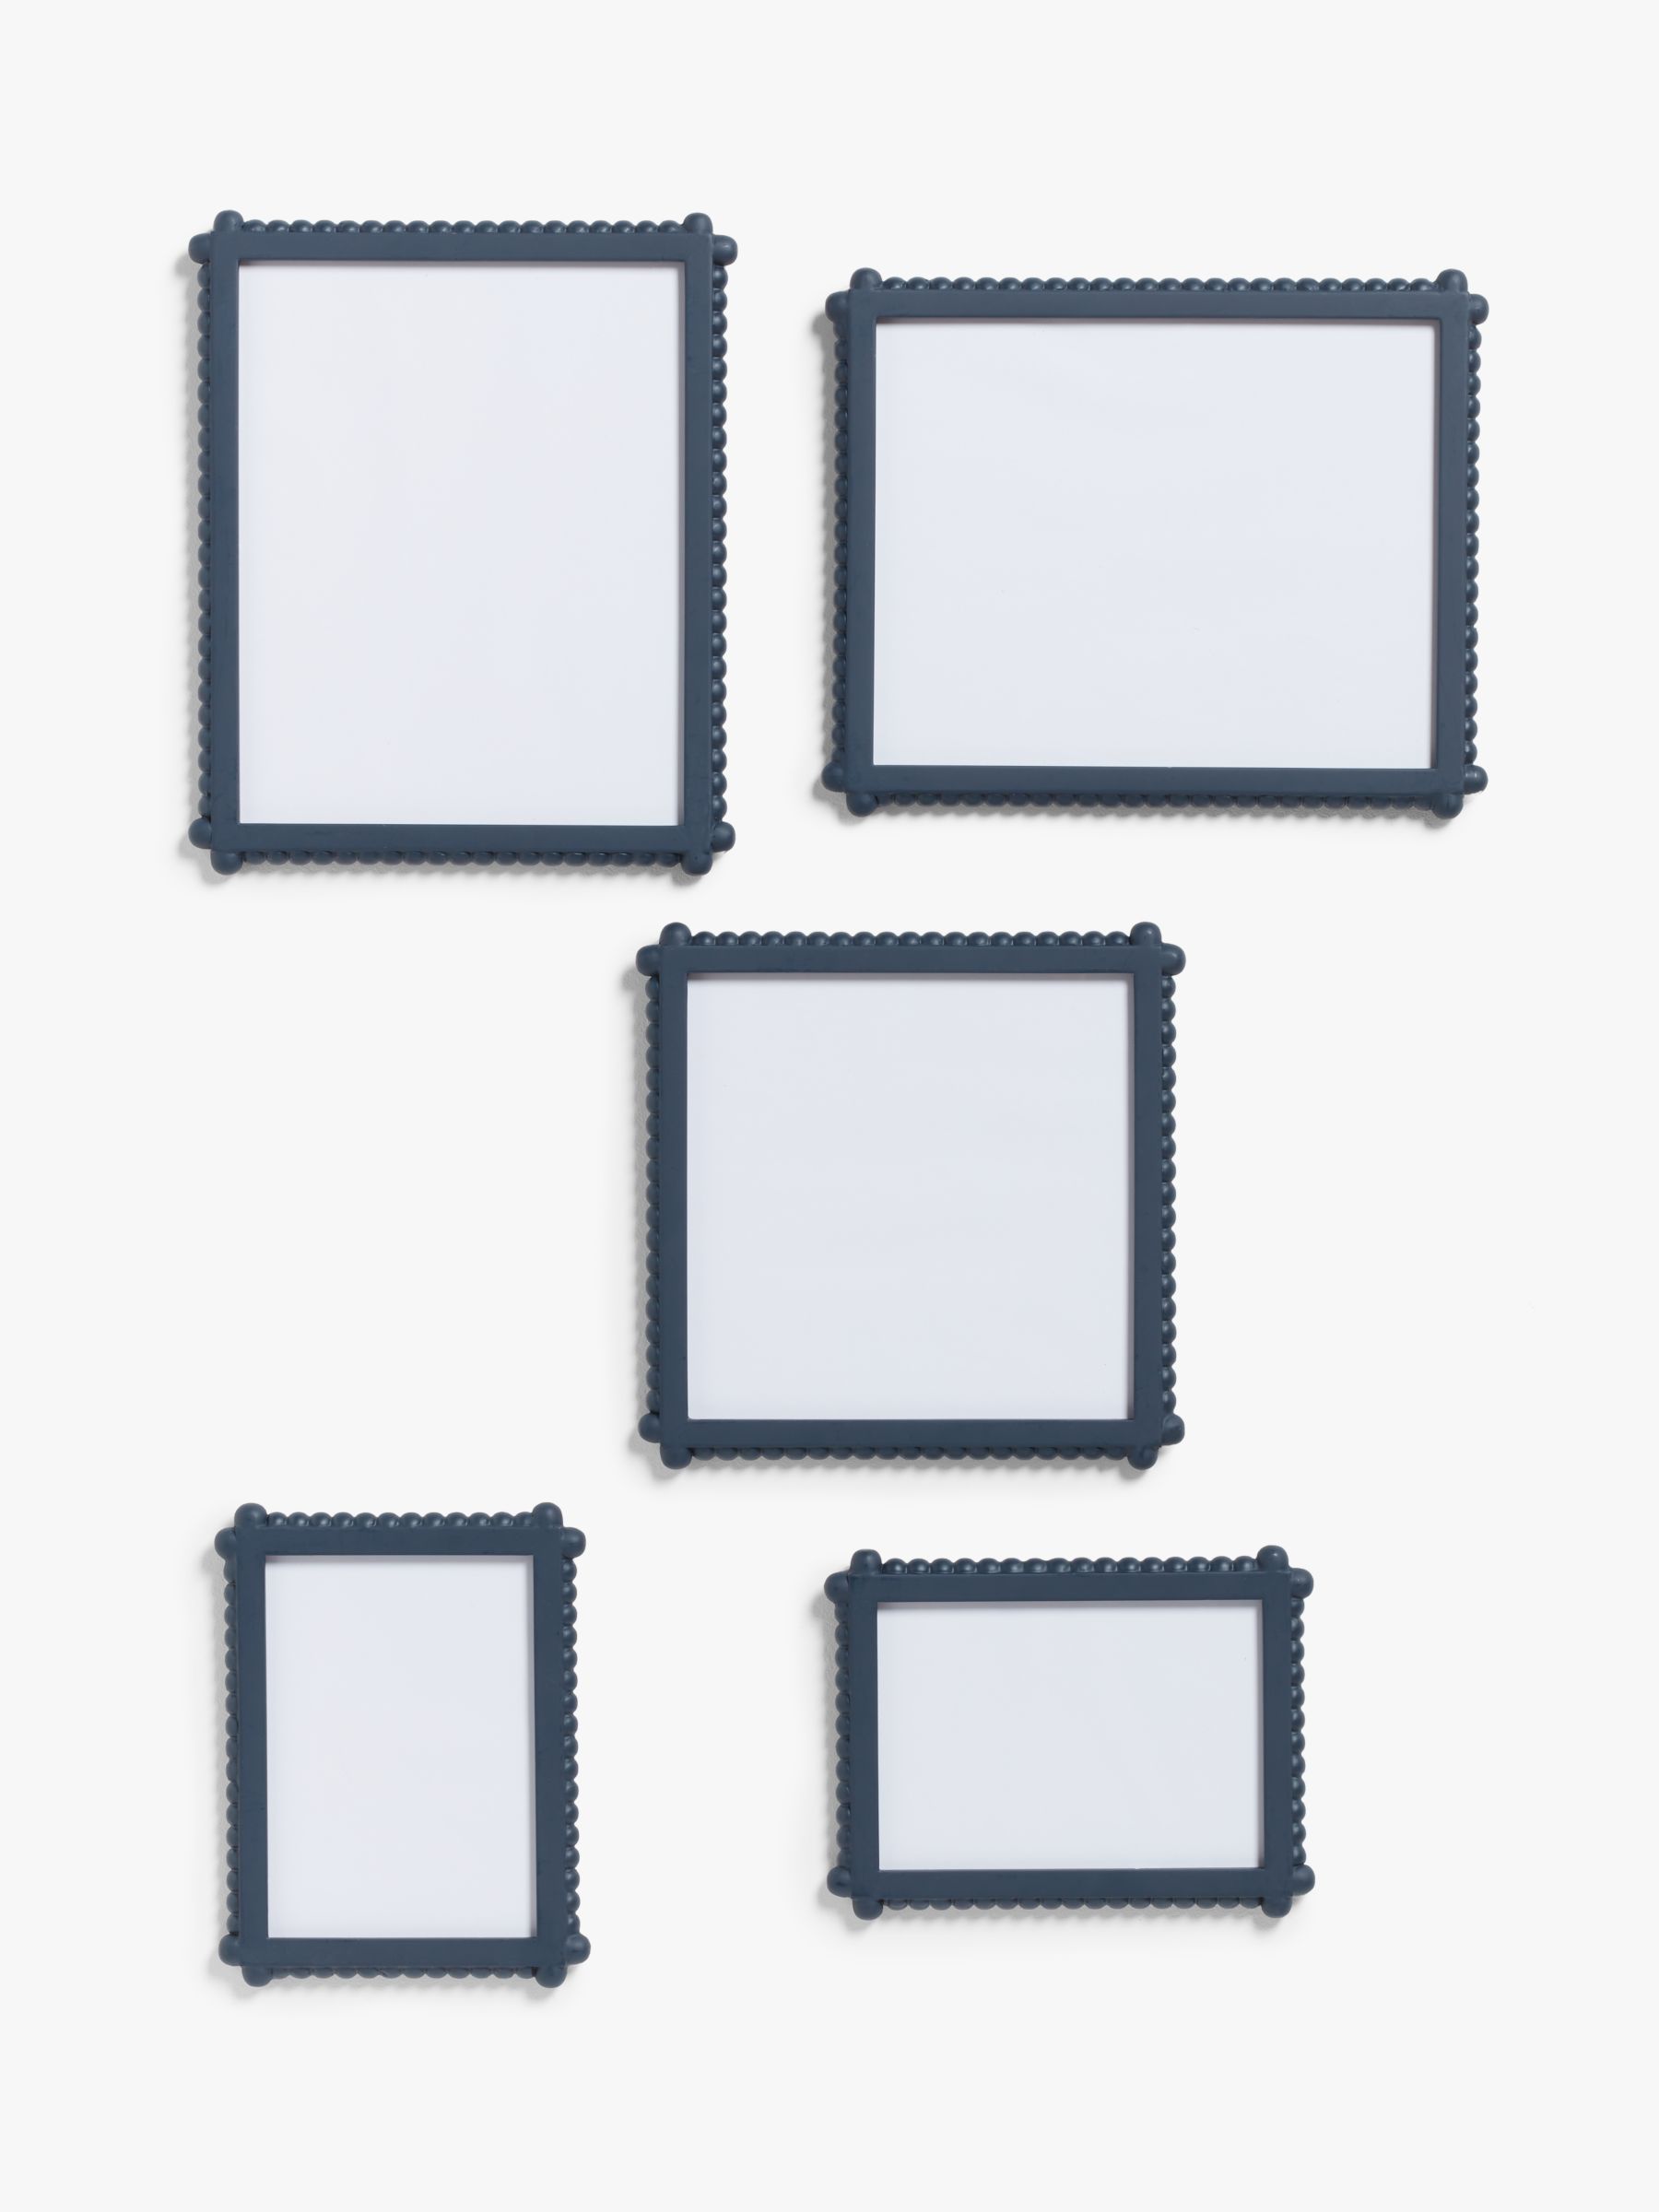 16x16 / 14x14 / 12x12 / 10x10 / 8x8 / 4x4 Square Photo Frames Oxford Black  Picture Frame / White / Grey / Oak Effect Mounted Frames 